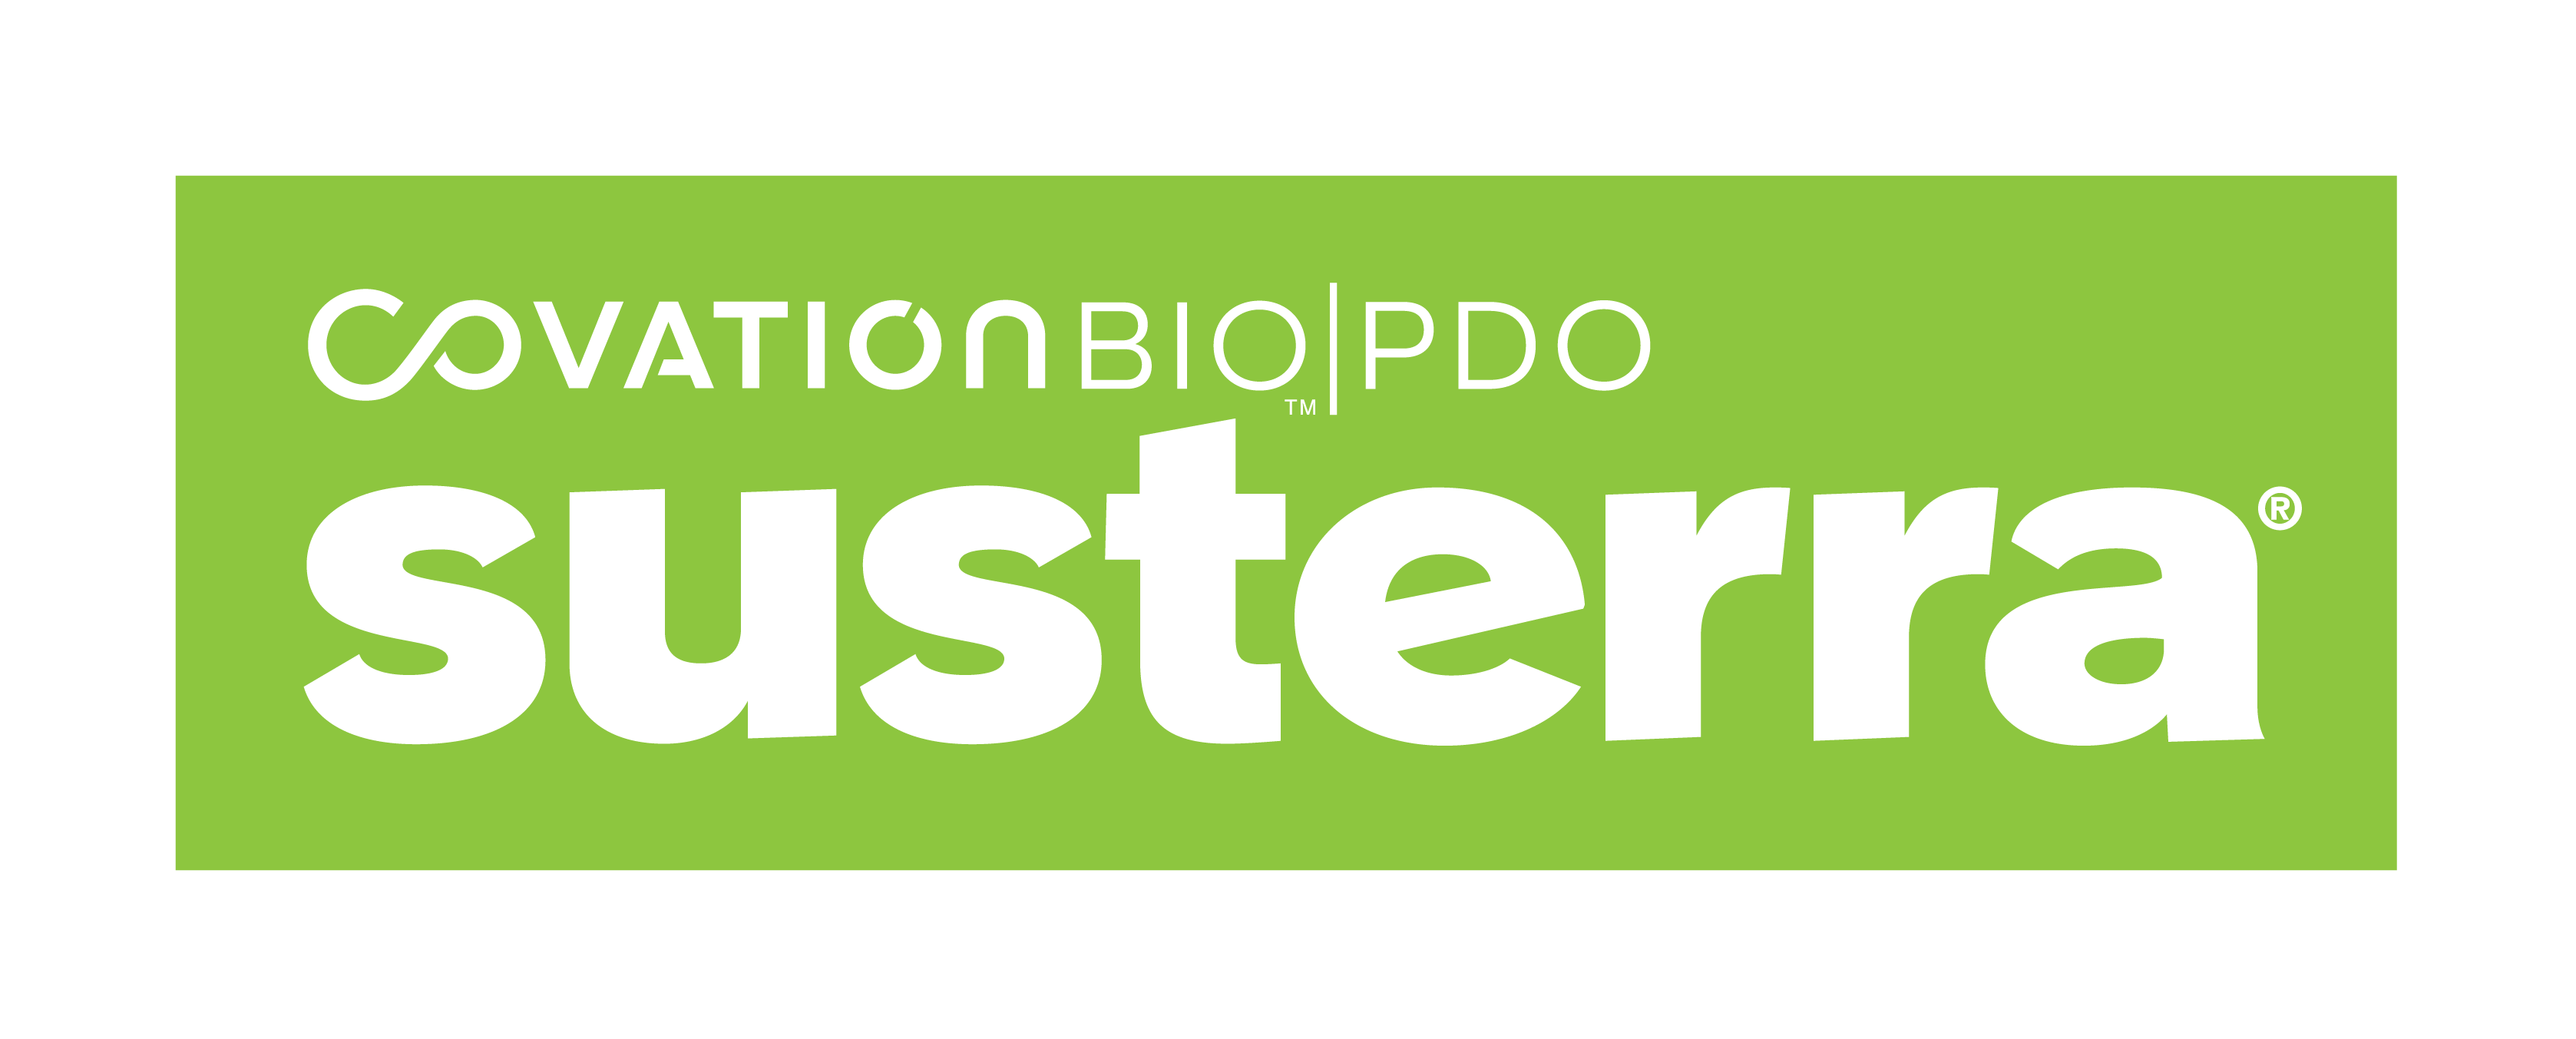 Susterra - Covation Bio PDO